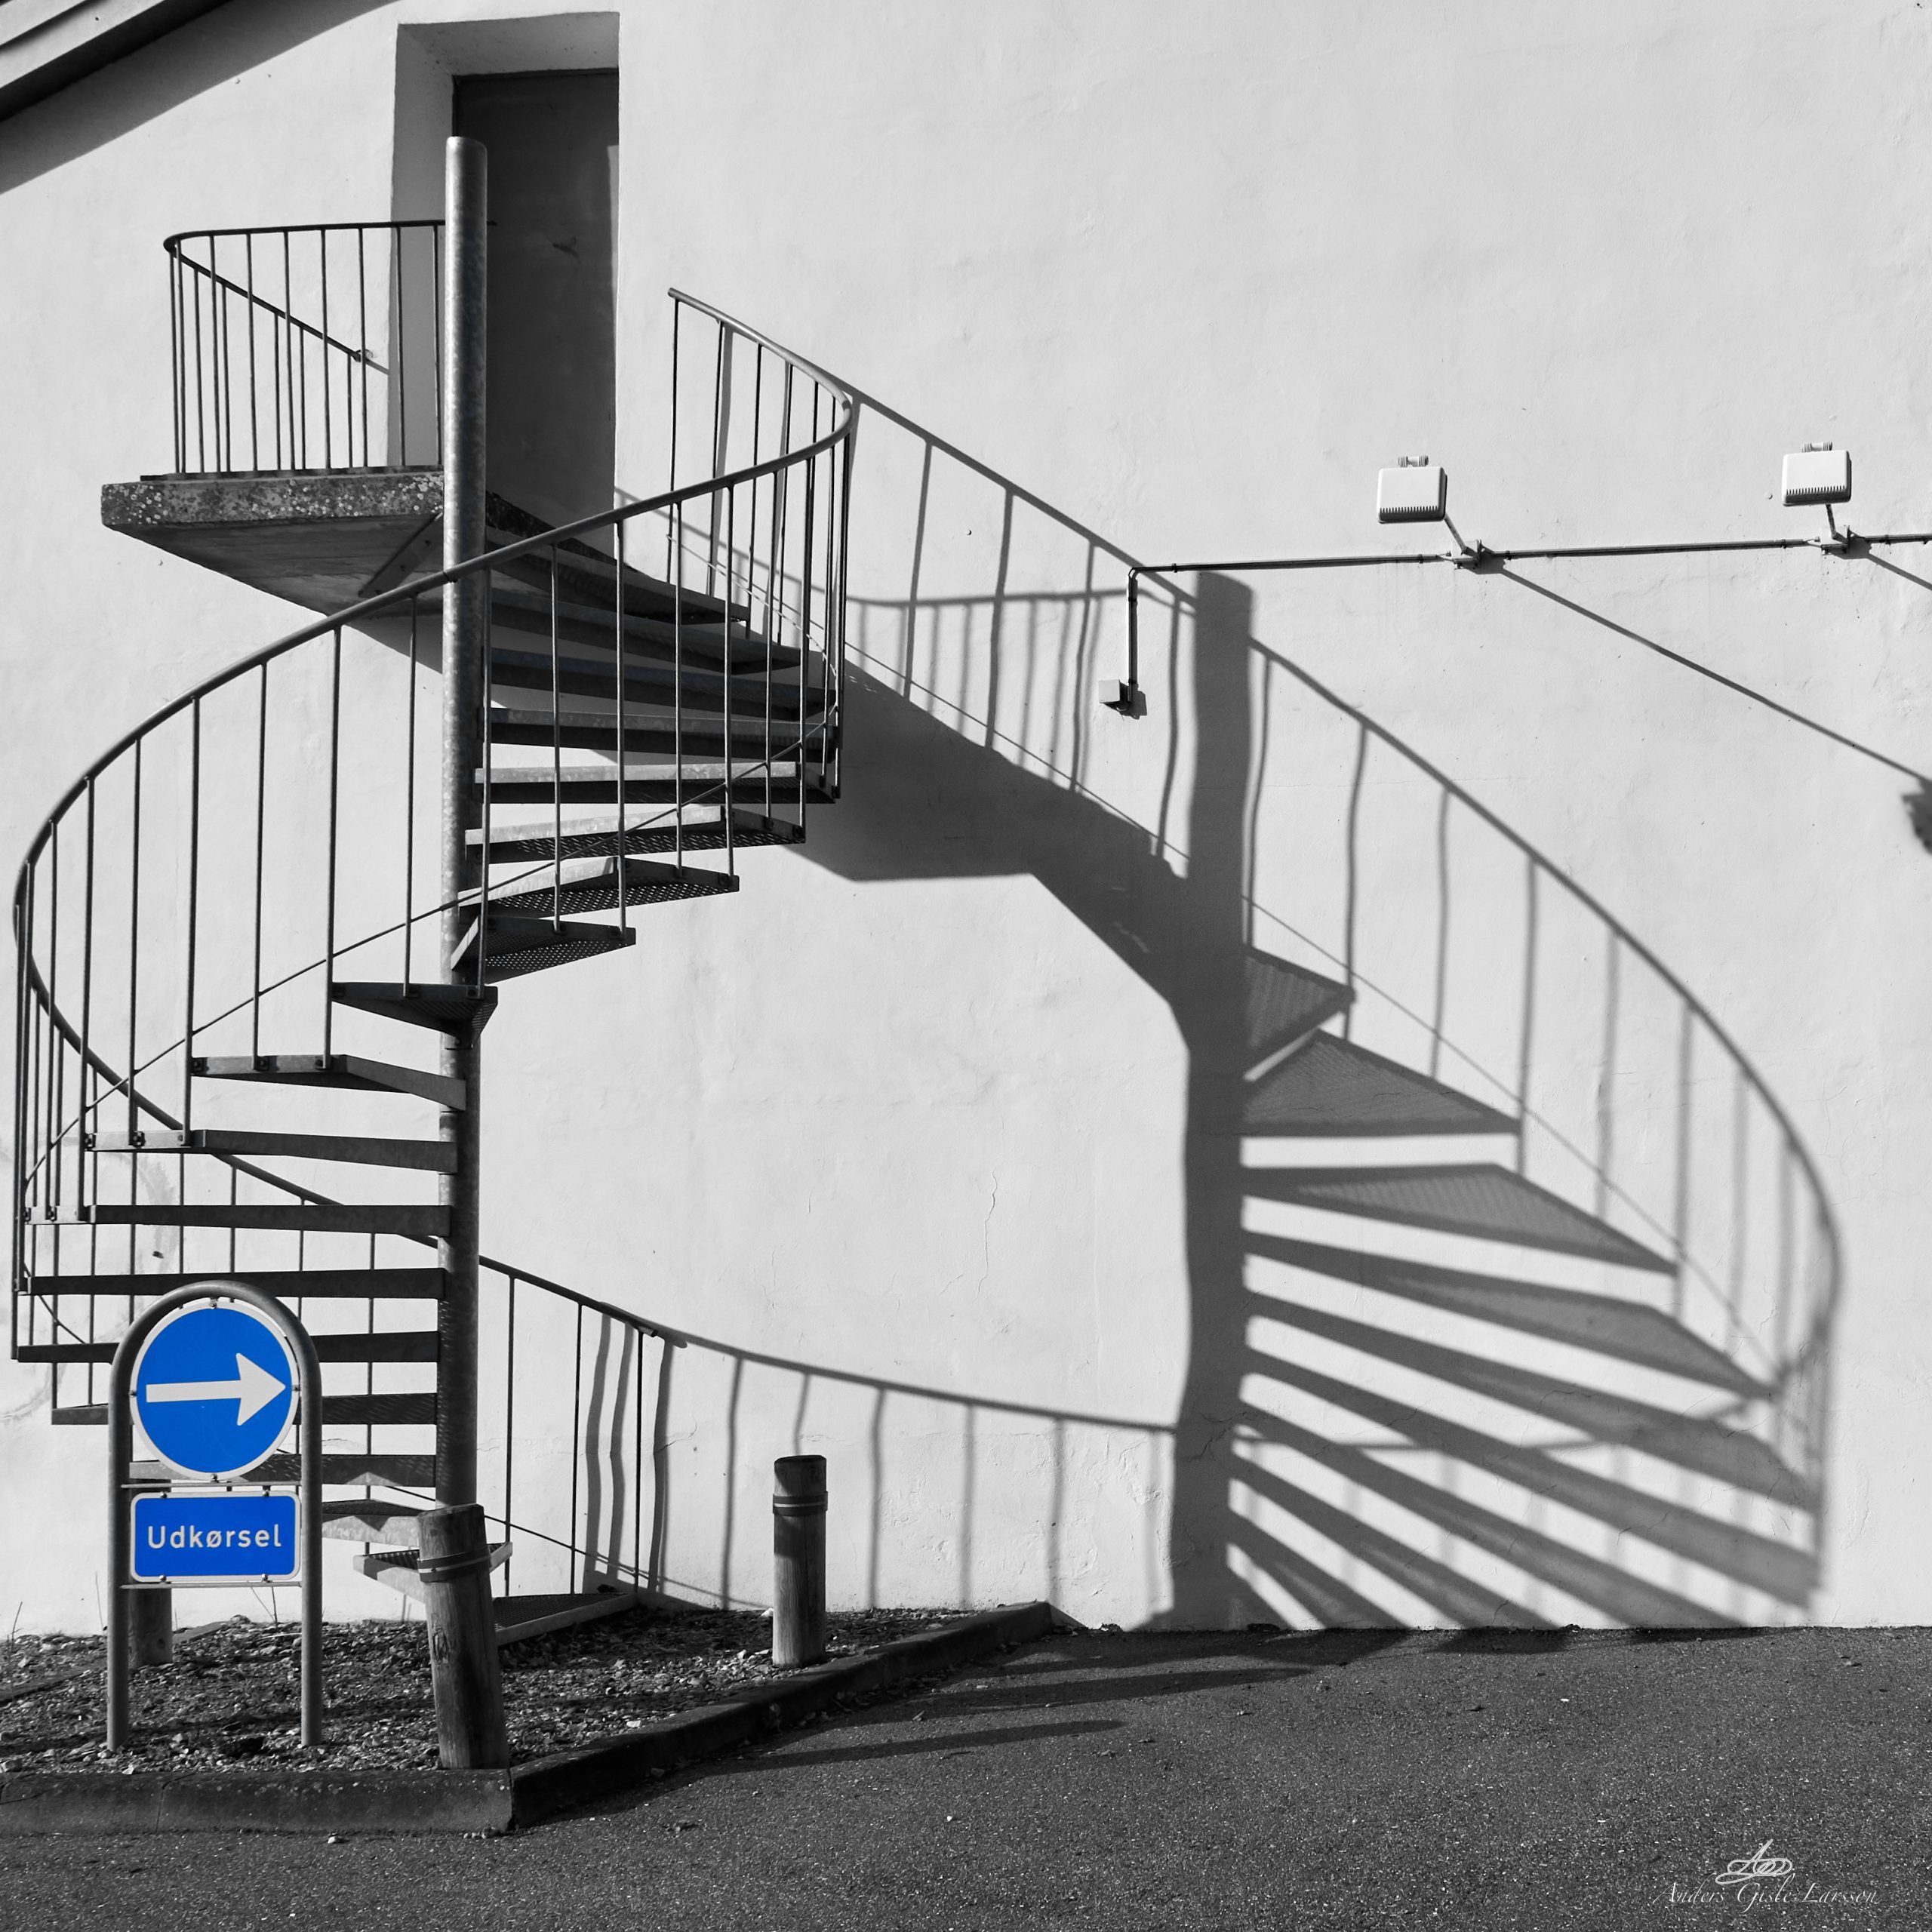 2023-10-14 12.24.30 - Endless Stair, 287-365, Uge 41, Randers - _A140012 - ©Anders Gisle Larsson.jpg